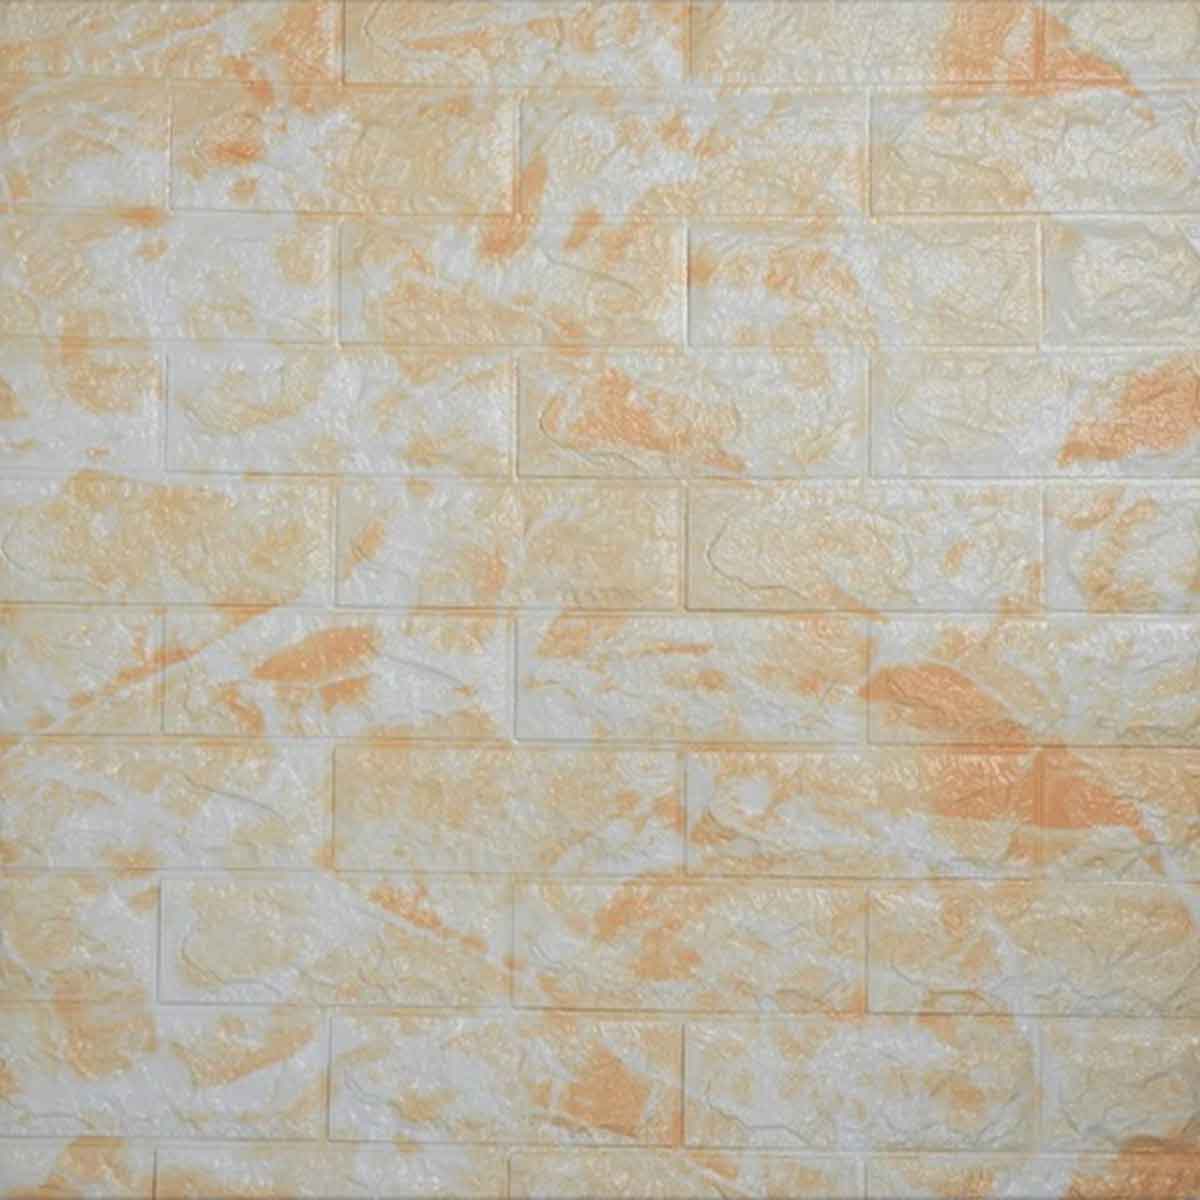 Τρισδιάστατα Αυτοκόλλητα Πάνελ Τοίχου με αφρώδης υφή 77x70cm HYD-014 χρώμα τούβλου